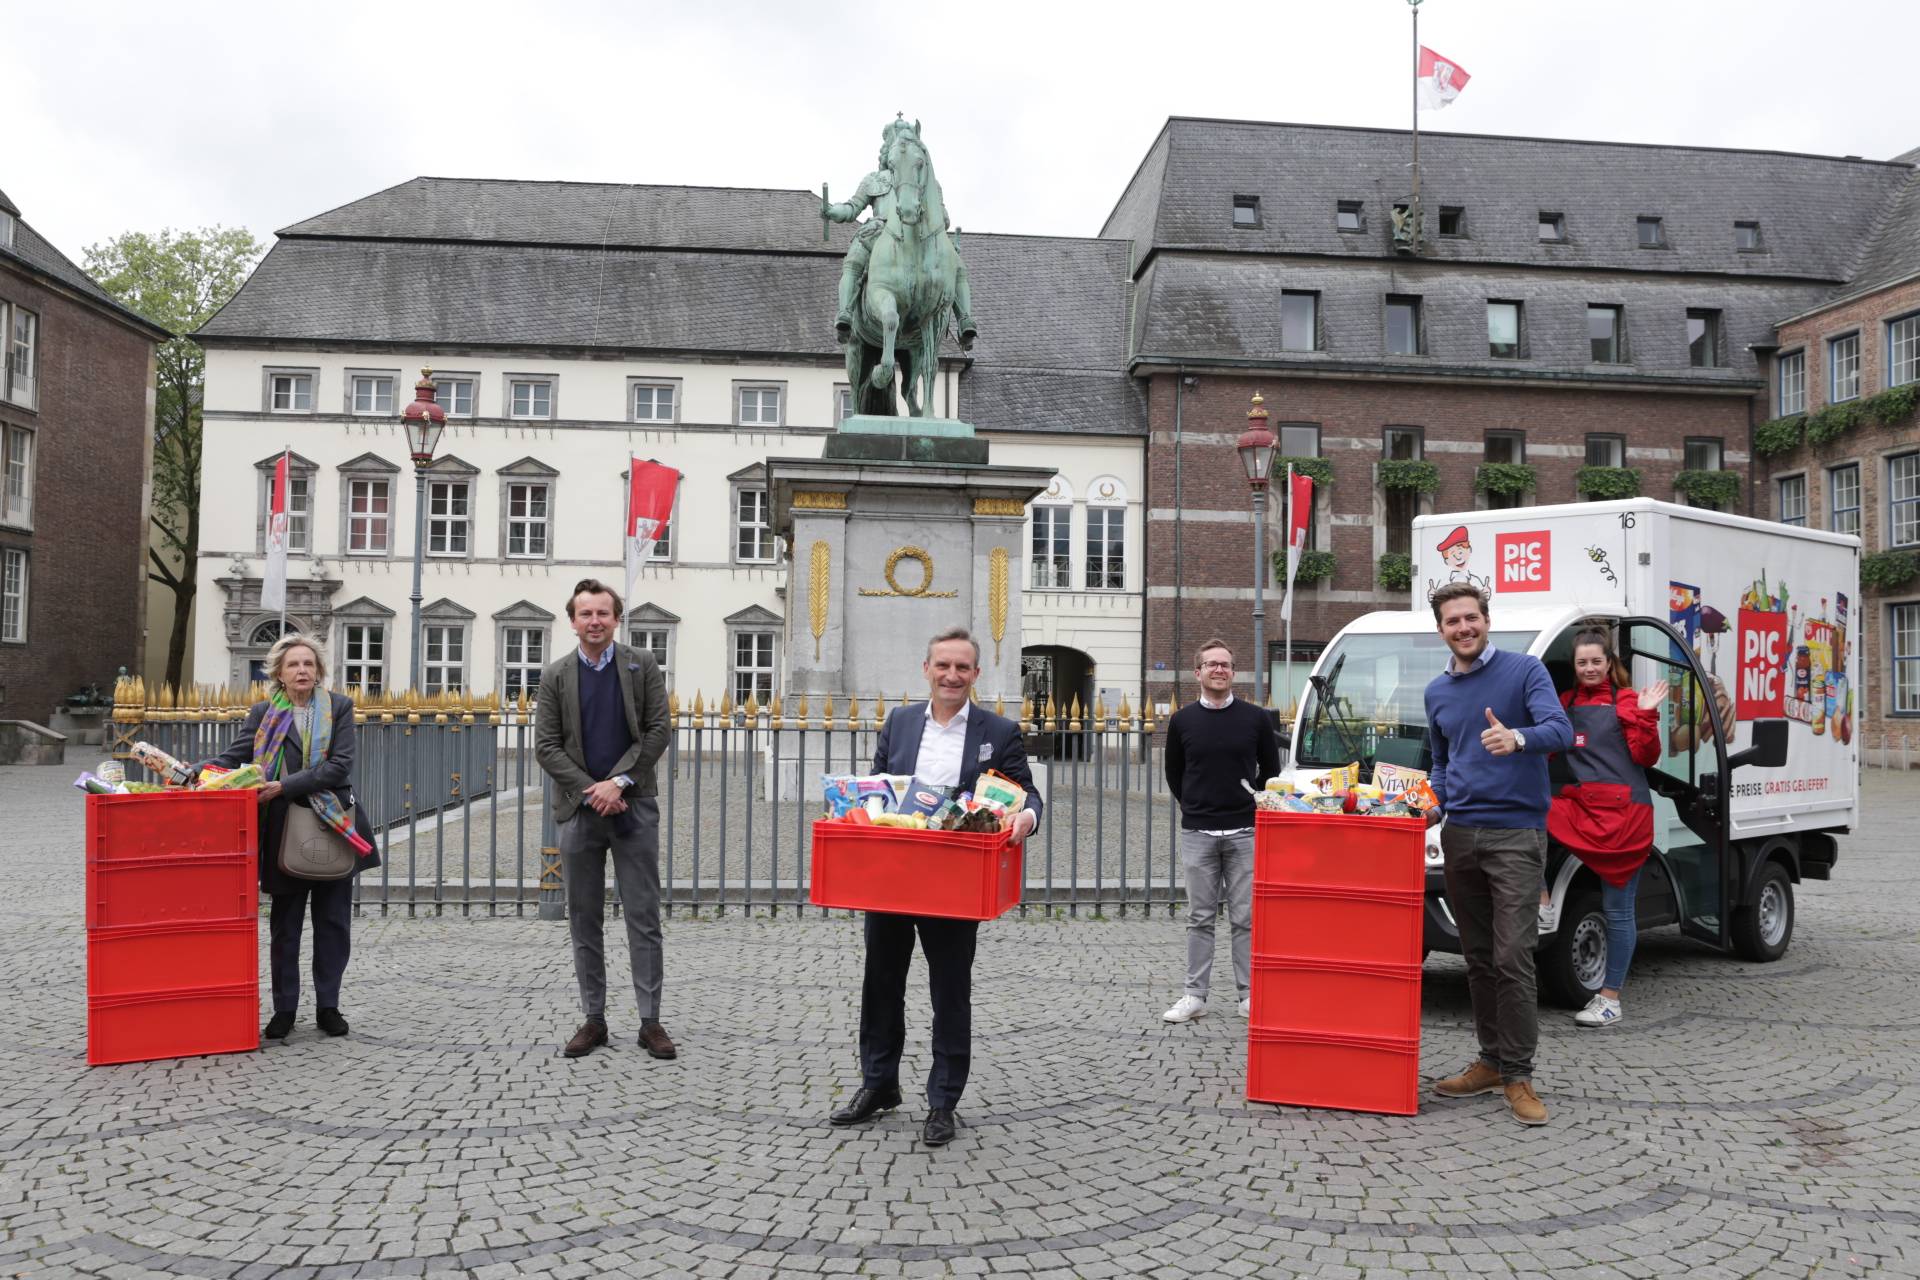  Oberbürgermeister Thomas Geisel (Mitte, mit Kiste in der Hand) übergab am Mittwoch, 29. April, mehrere Kisten mit Lebensmitteln, eine Spende der Firma Picnic, an die Düsseldorfer Tafel. 